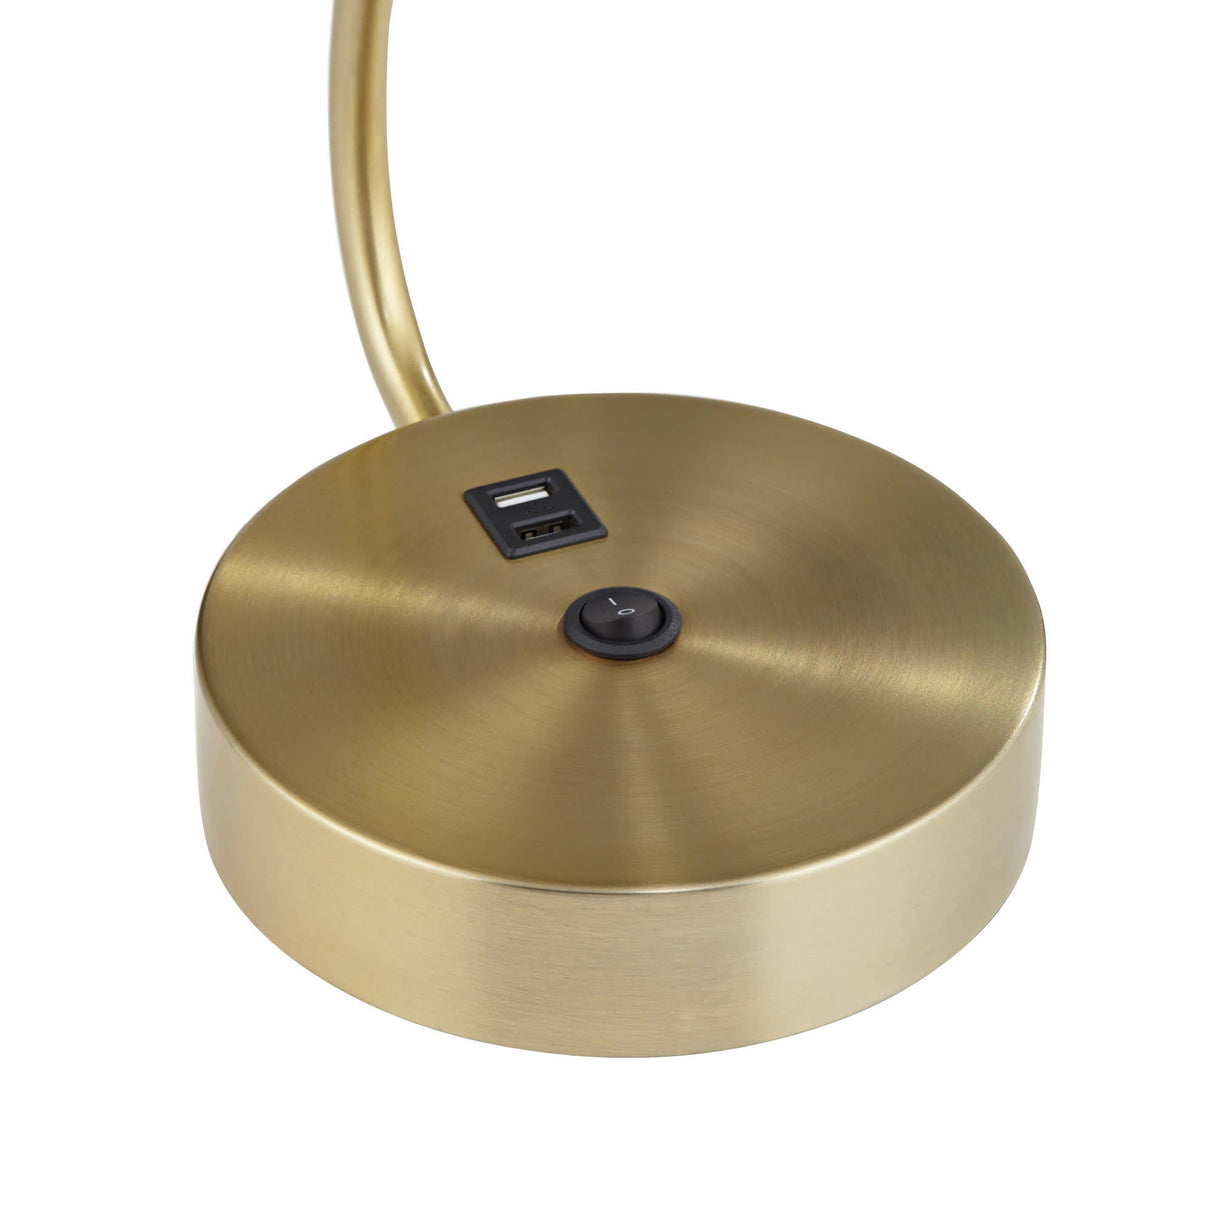 Legend - Table Lamp - Antique Brass